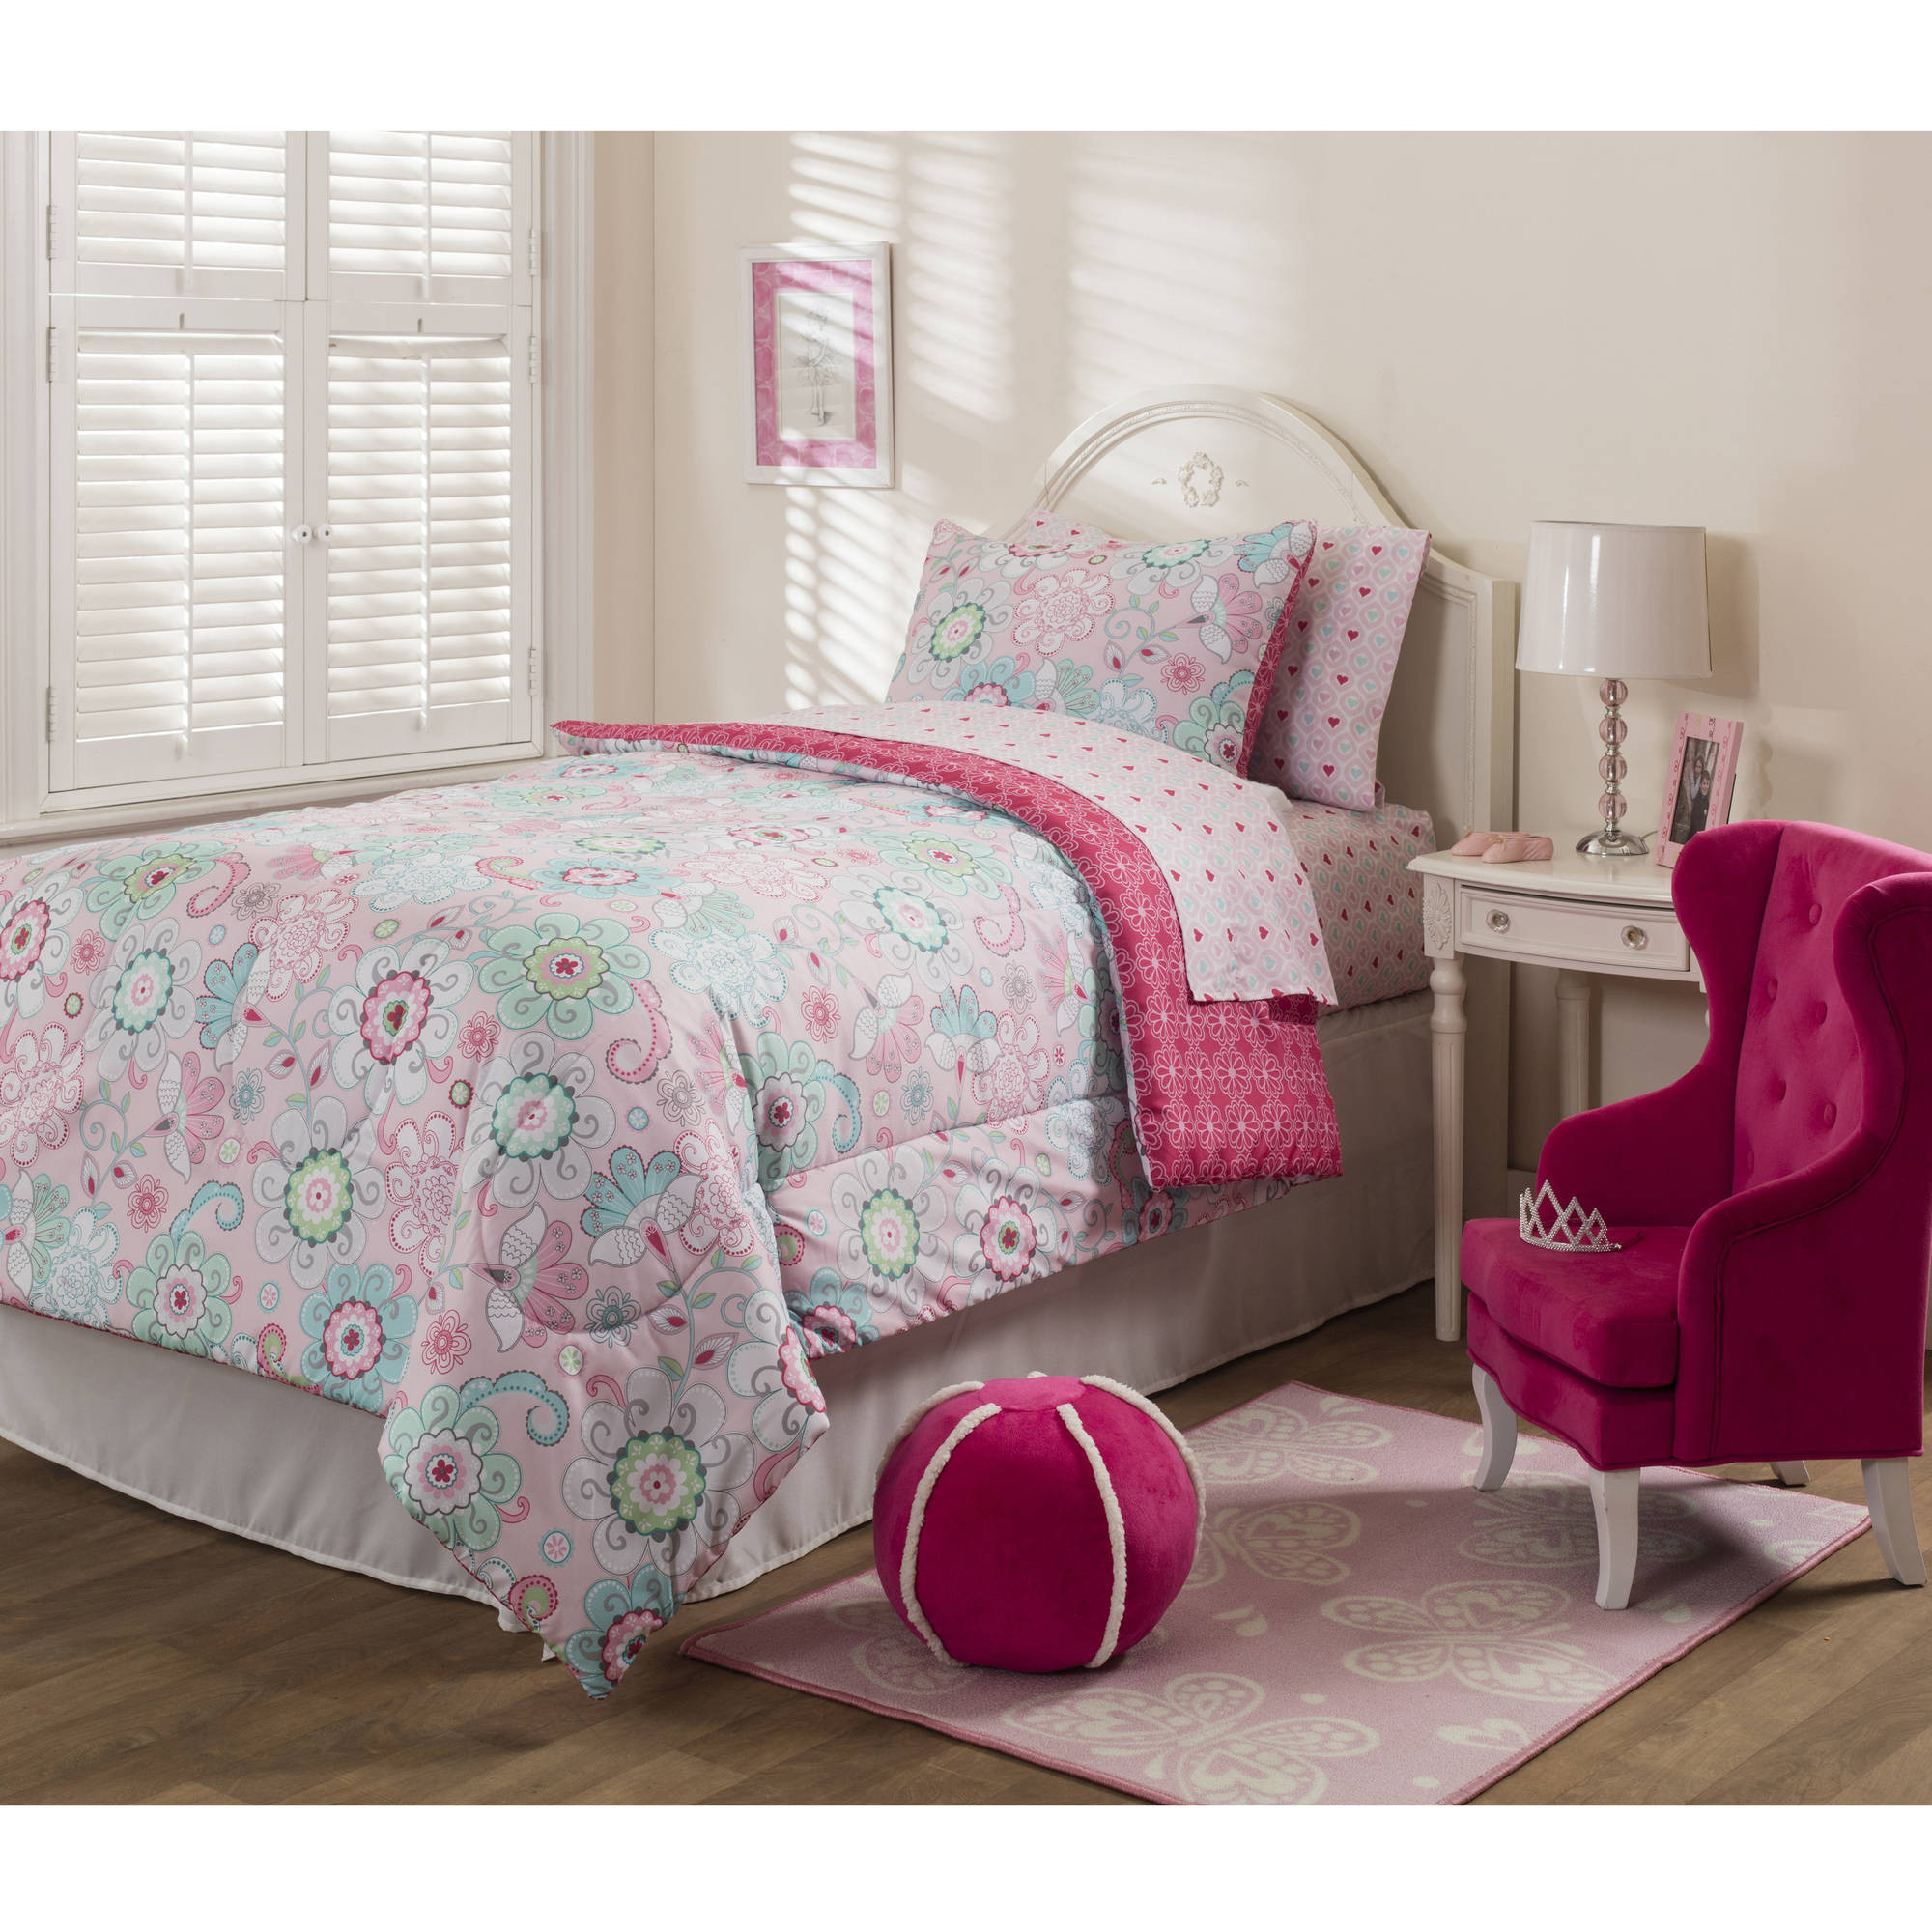 Walmart Bedroom Sets For Kids
 Mainstays Kids Sherbet Pink Bed in a Bag Bedding Set